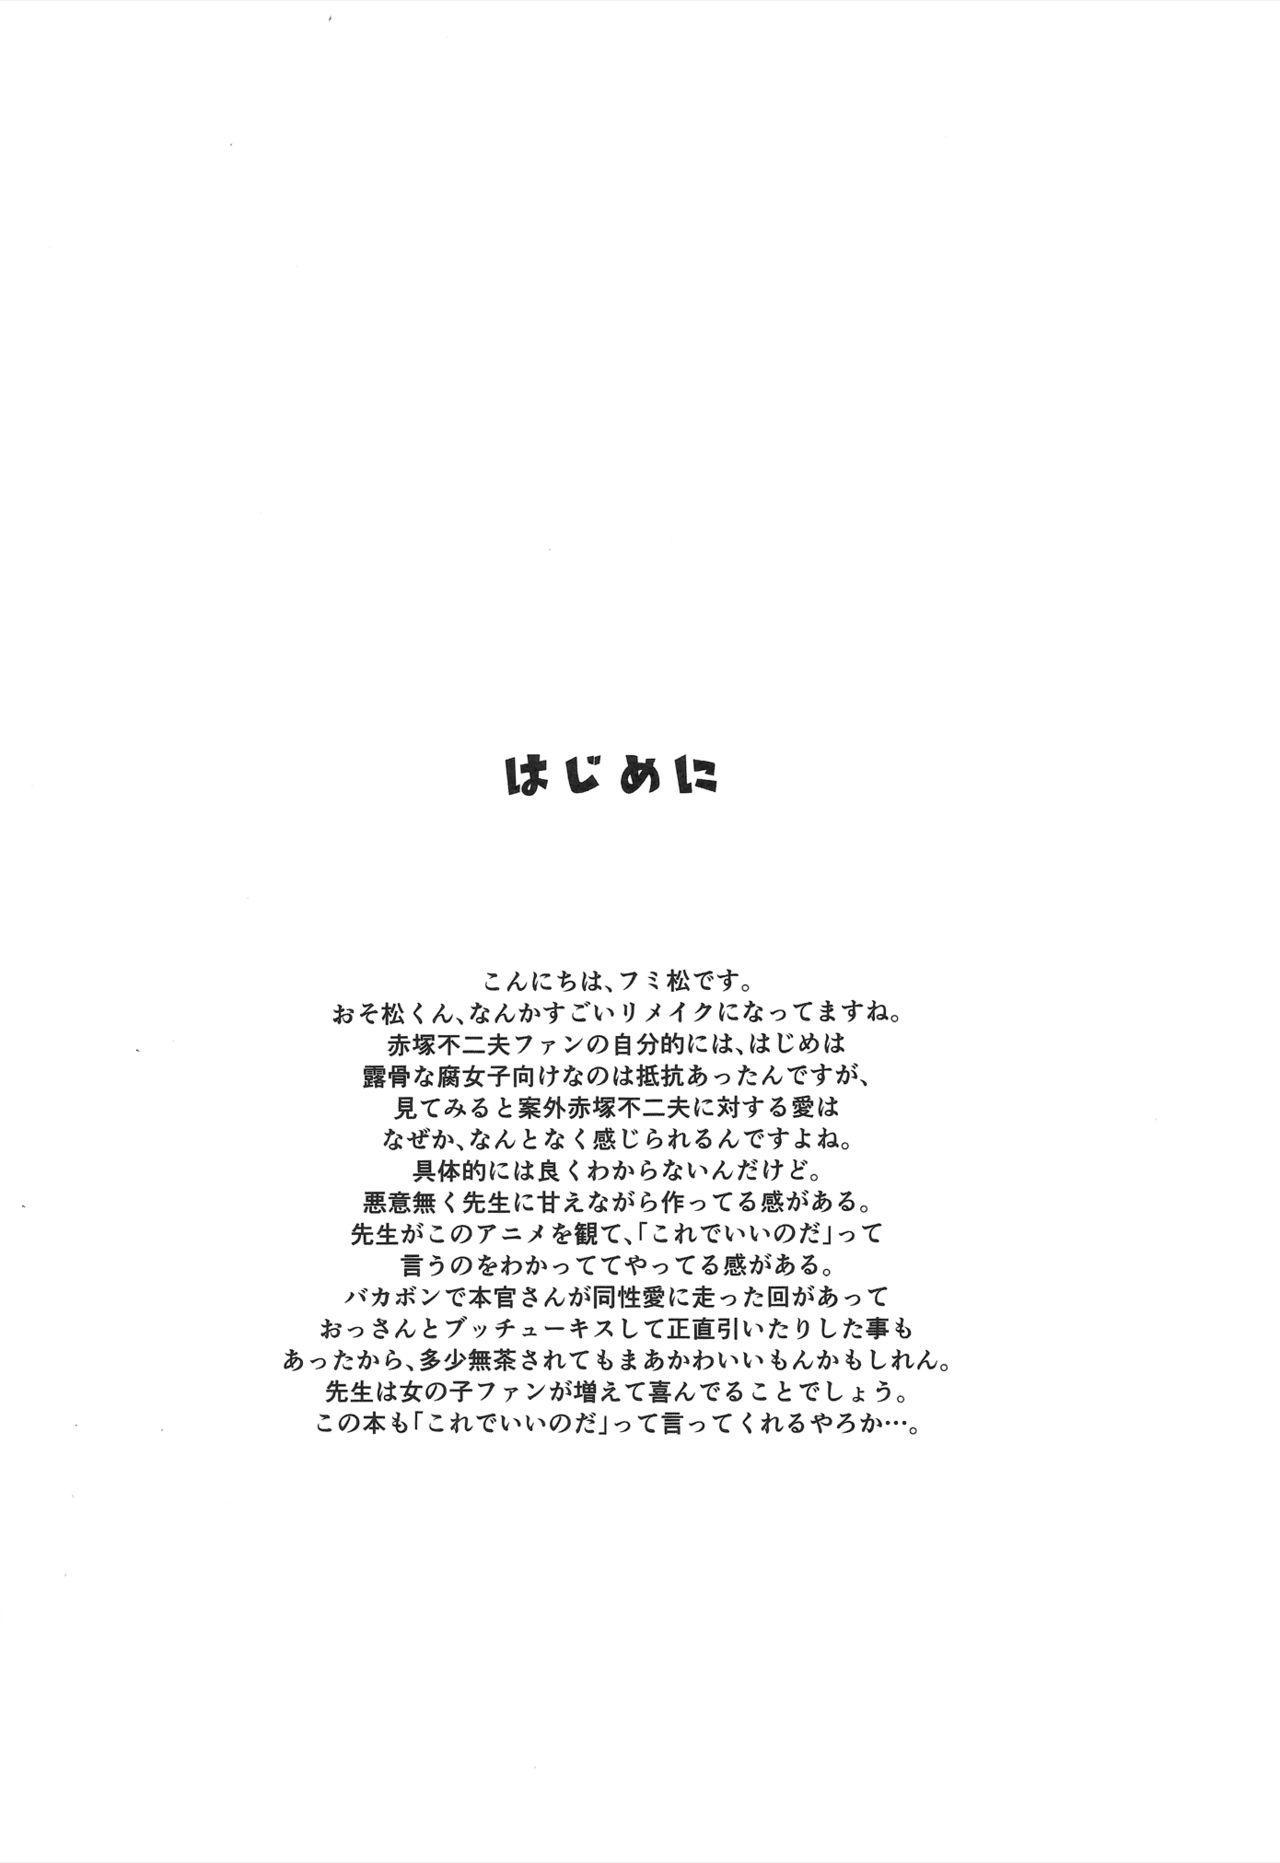 Farting Totoko no Mutsugo Giri - Osomatsu san 3some - Page 3